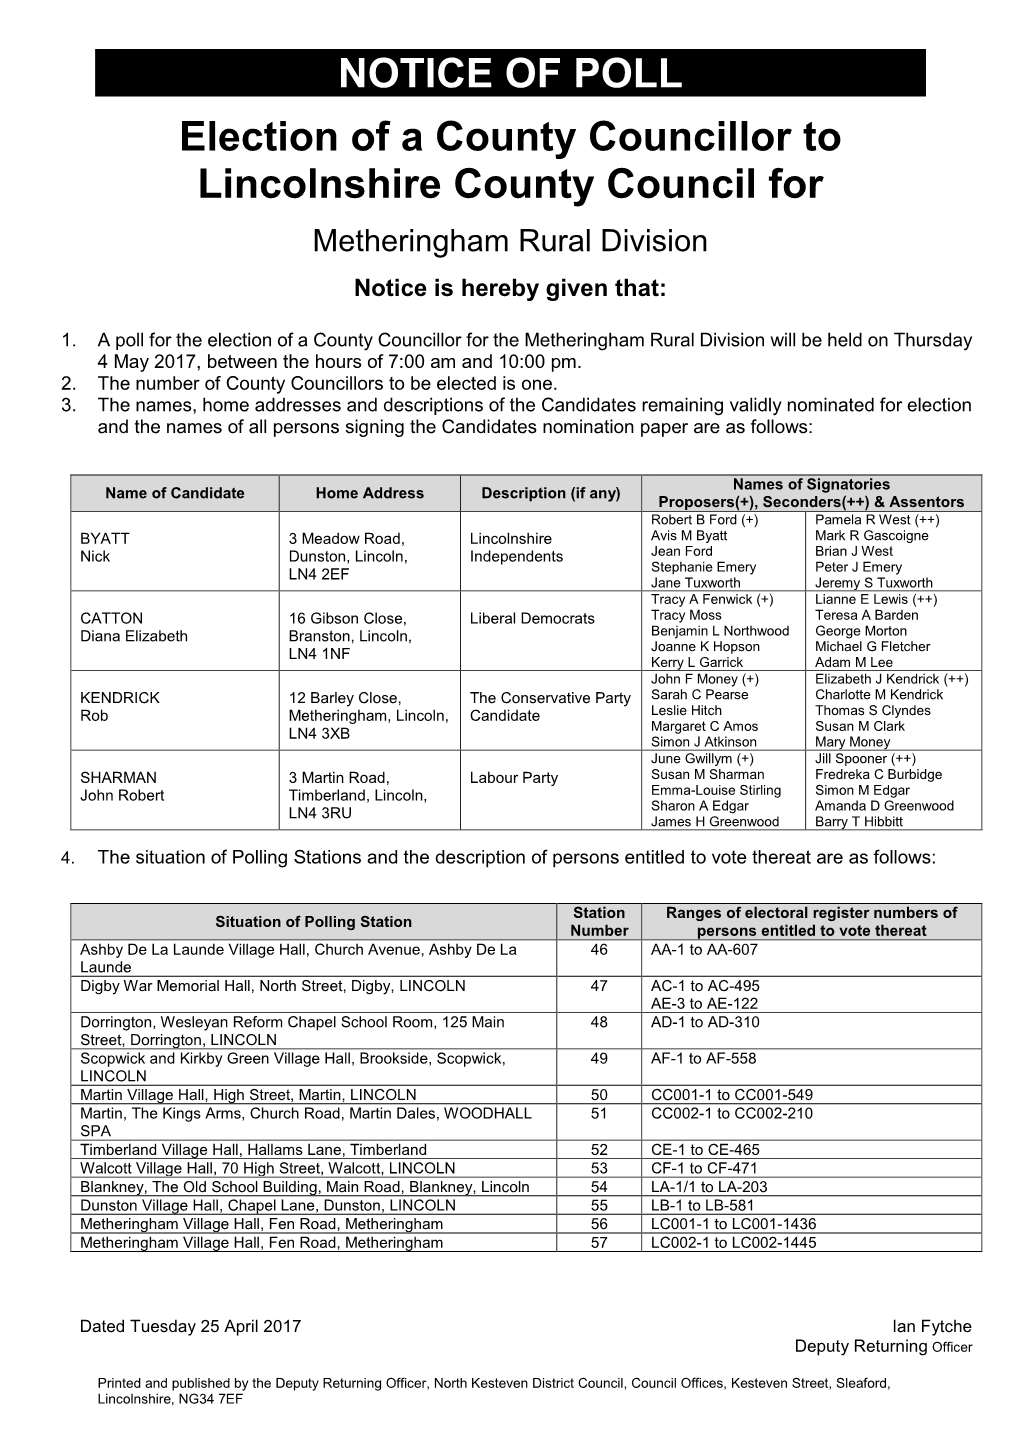 Notice of Poll Metheringham Rural